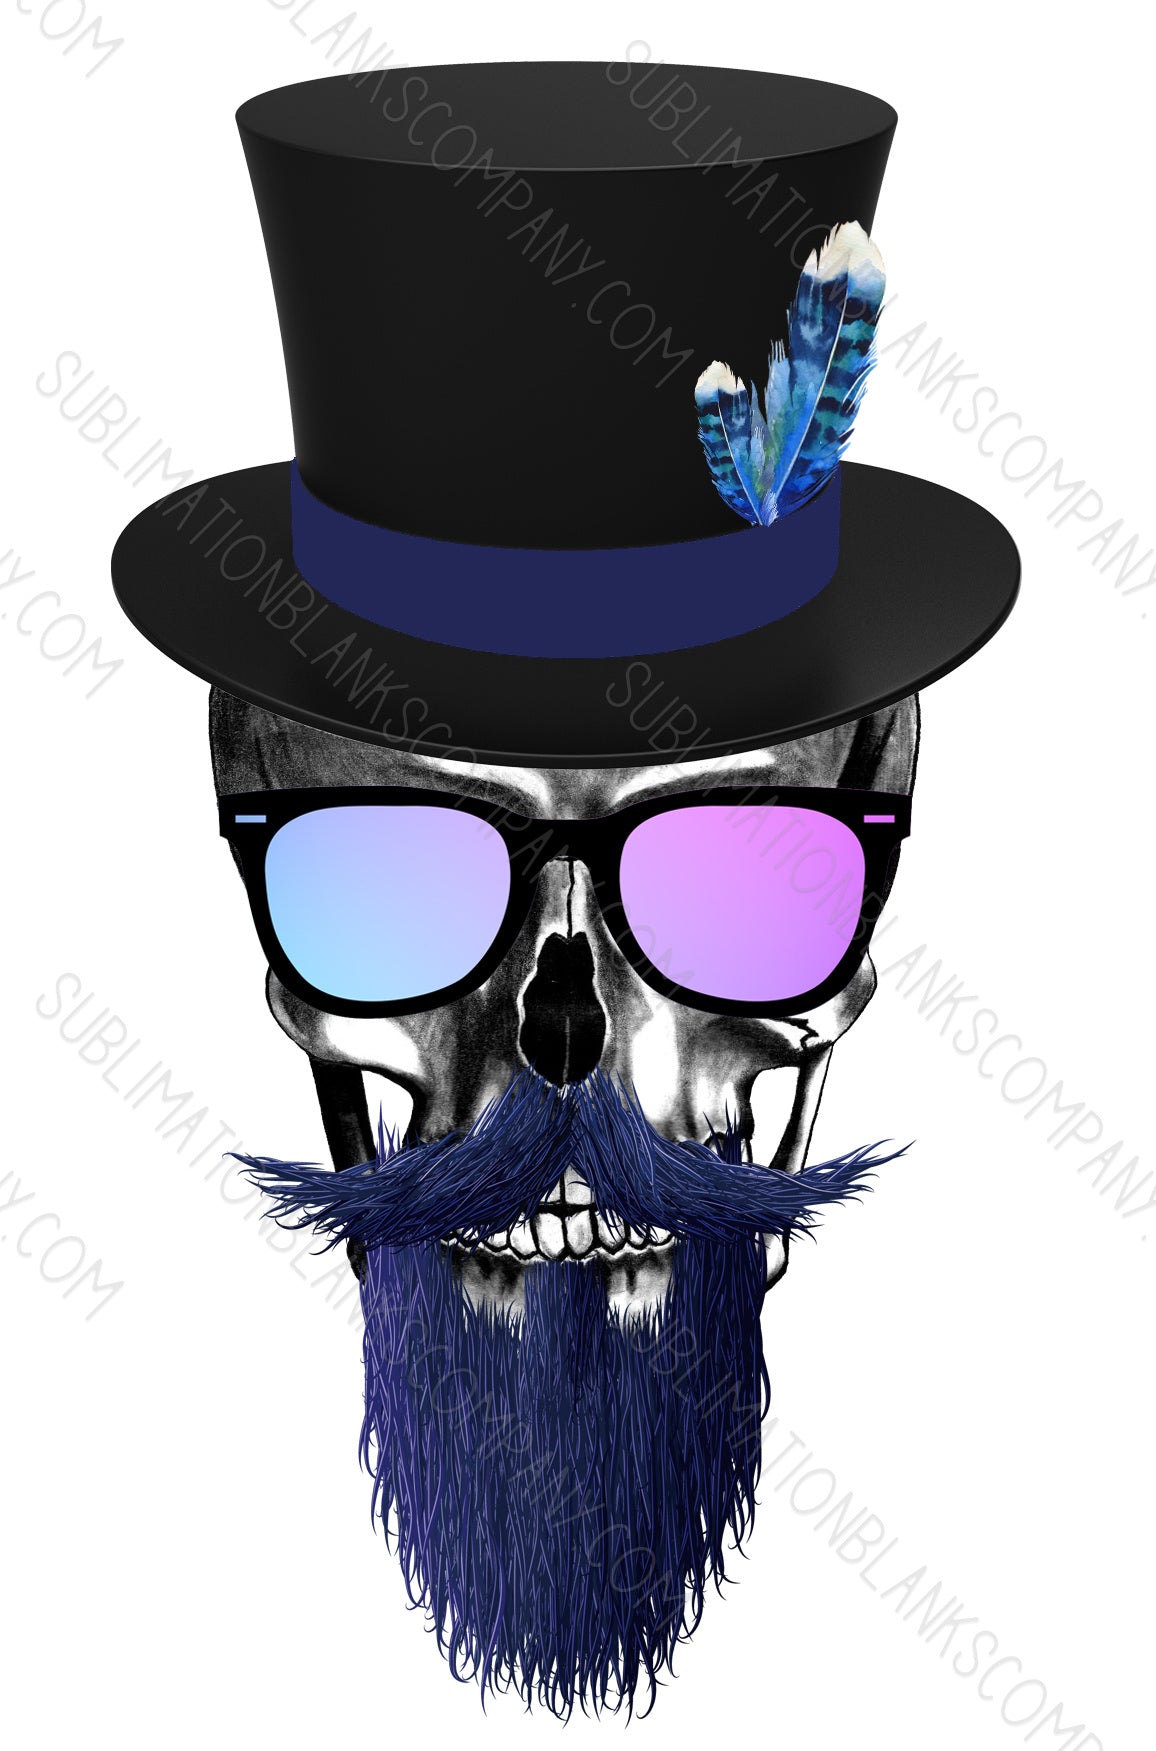 Blue Beard Skull .svg digital download artwork